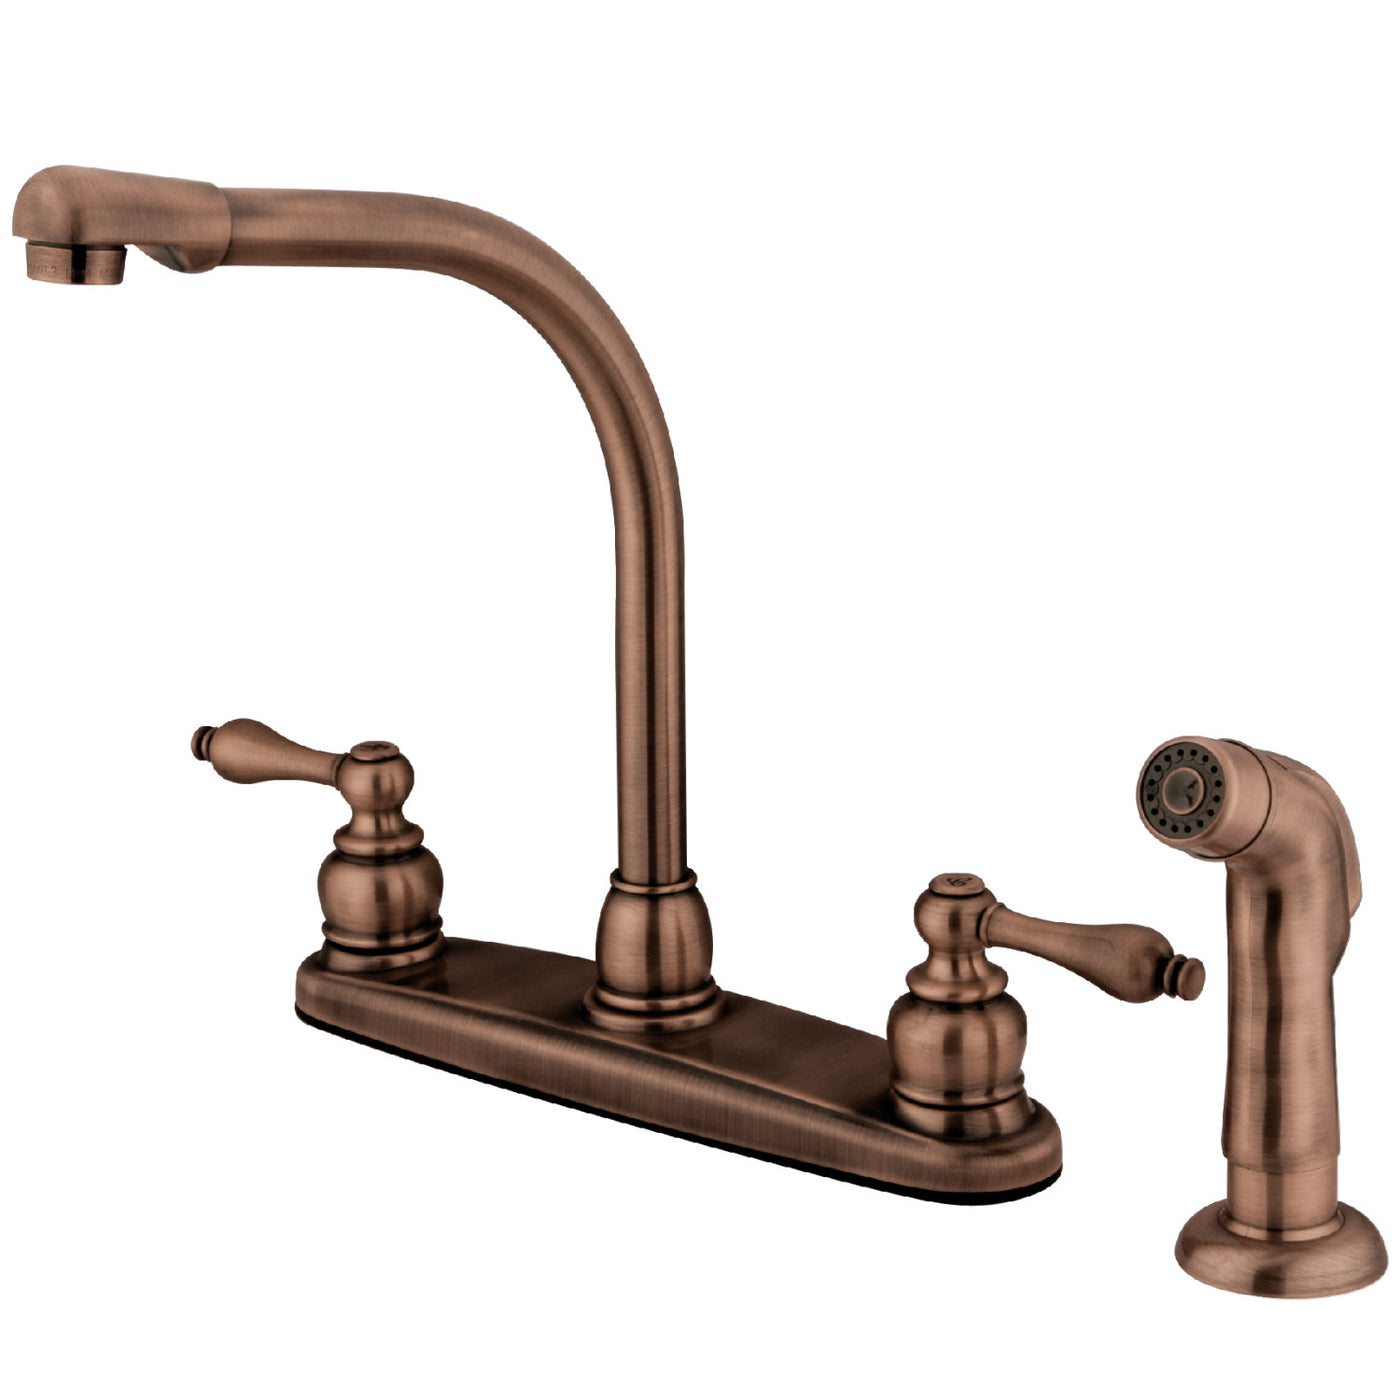 Elements of Design EB716ALSP Centerset Kitchen Faucet, Antique Copper